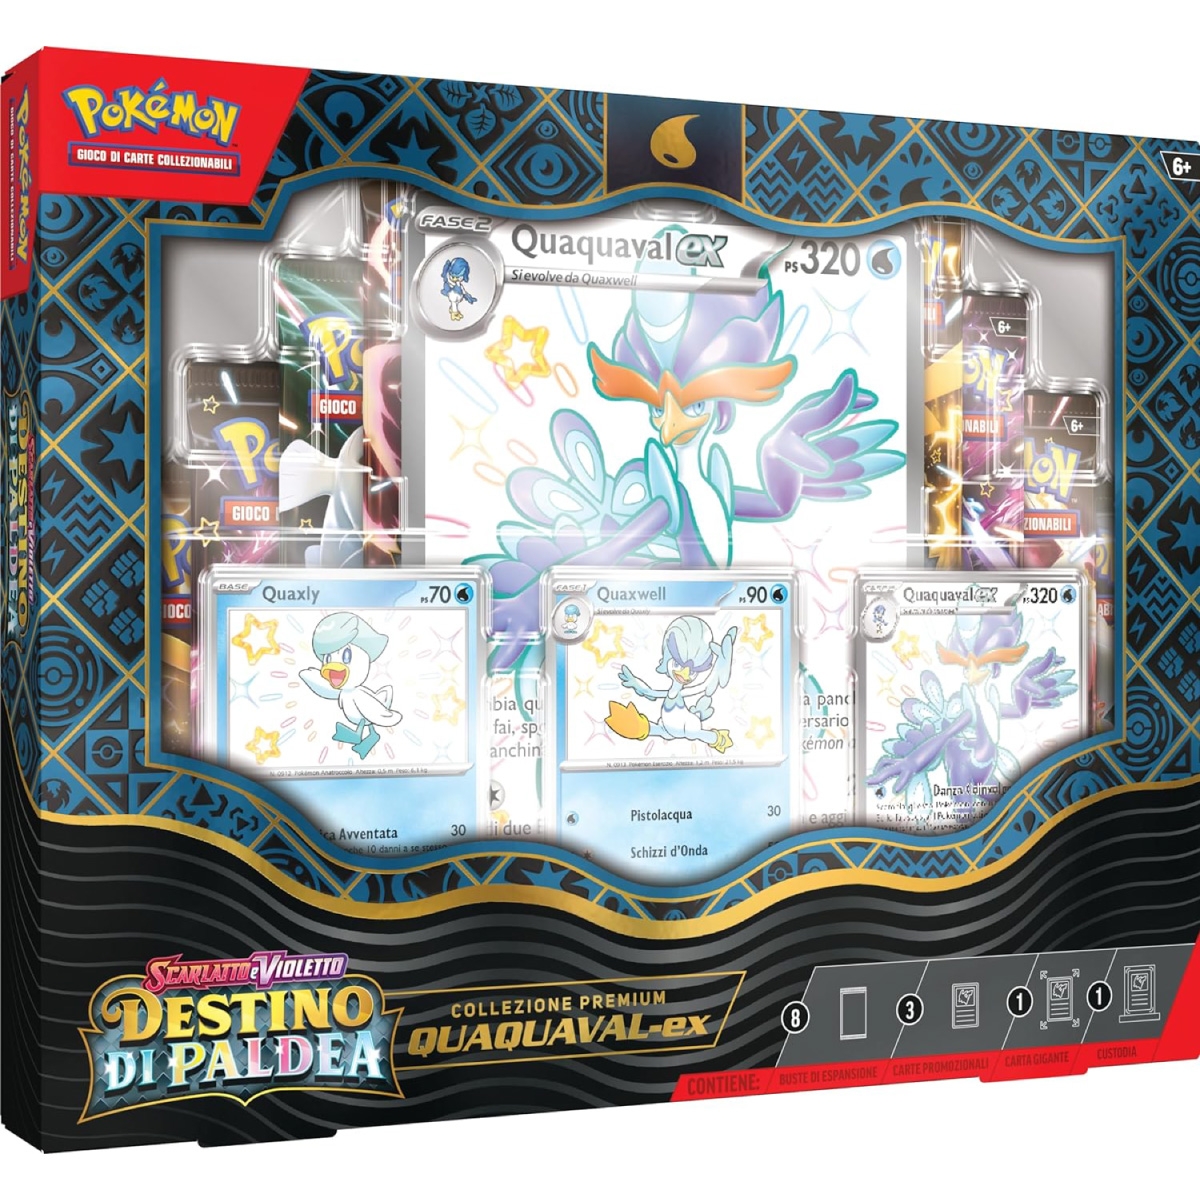 POKEMON COMPANY Pokemon Gcc - Scarlatto E Violetto Destino Di Paldea -  Collezione Premium - Quaquaval-ex (ita) a 59,99 €